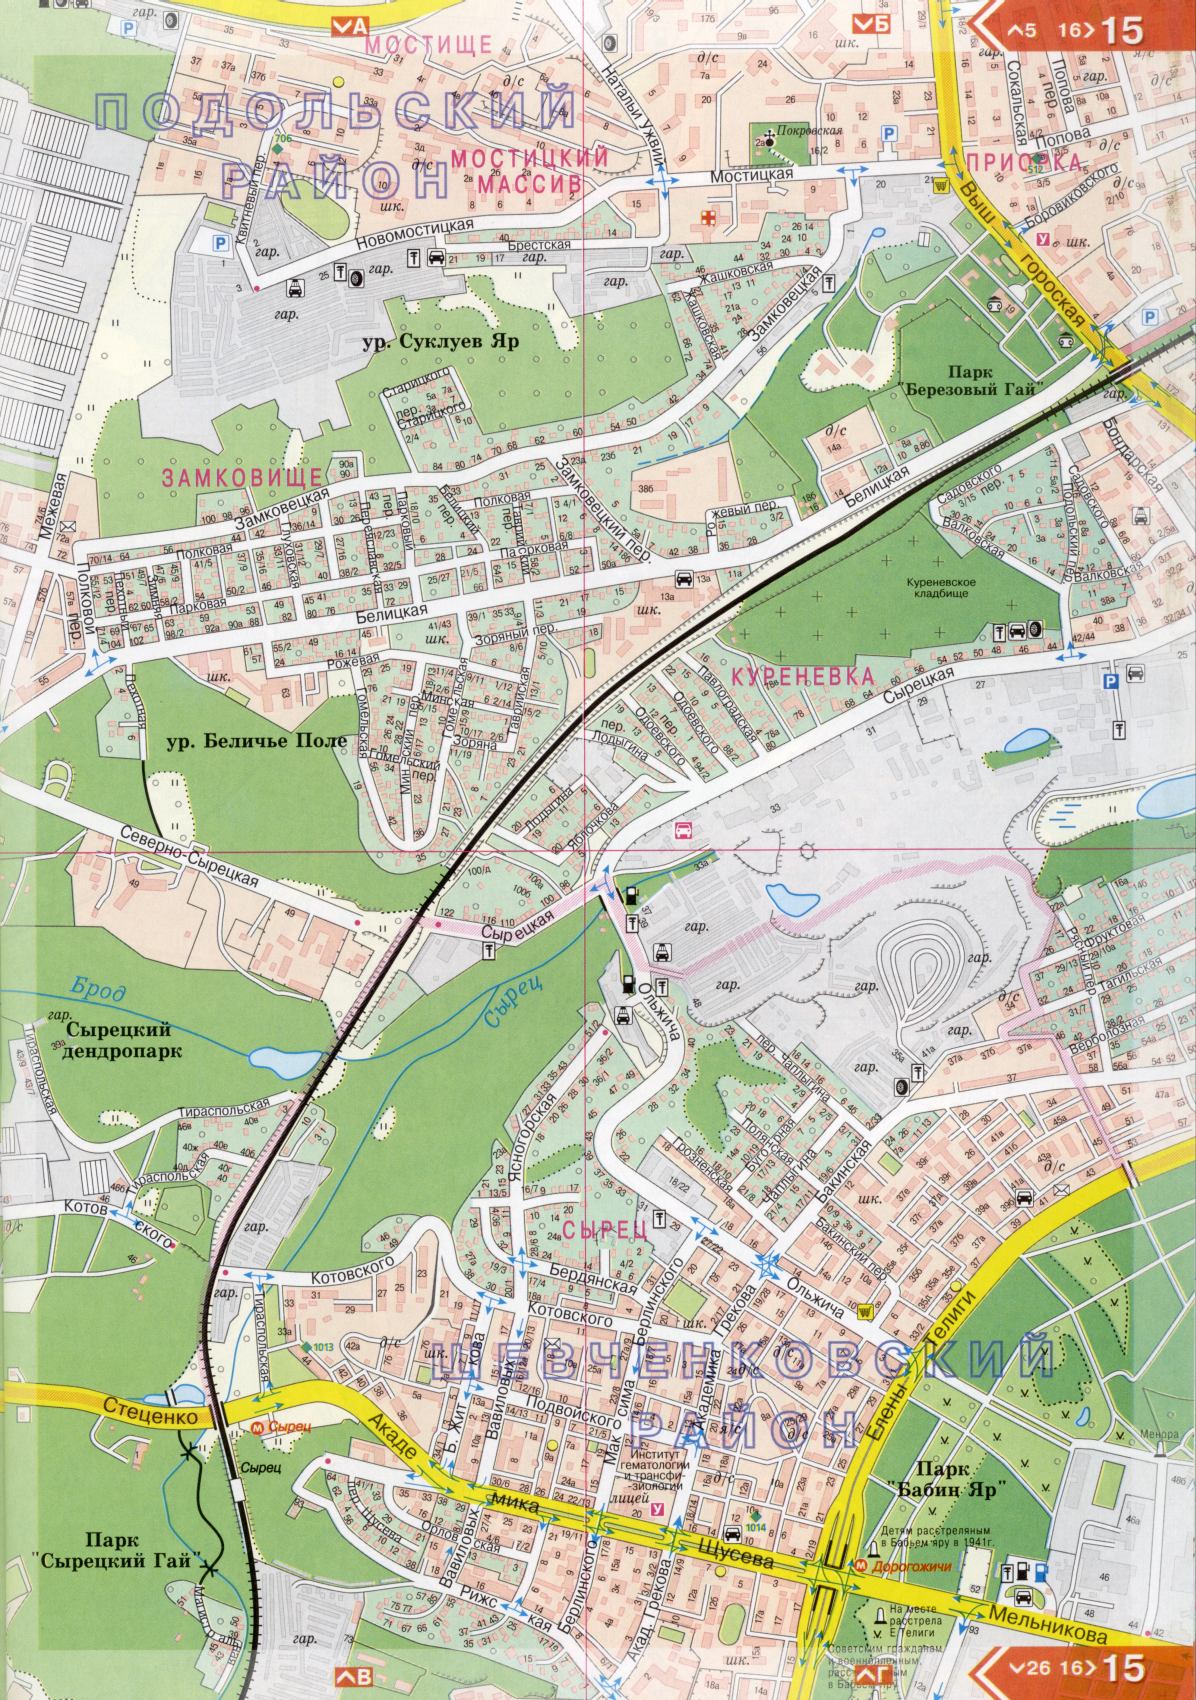 Kiew Karte Details 1cm = 150m für 45 Blatt. Karte von Kiew aus dem Atlas von Autobahnen. Laden Sie eine detaillierte Karte, C1 - Straße Academician Shchusev